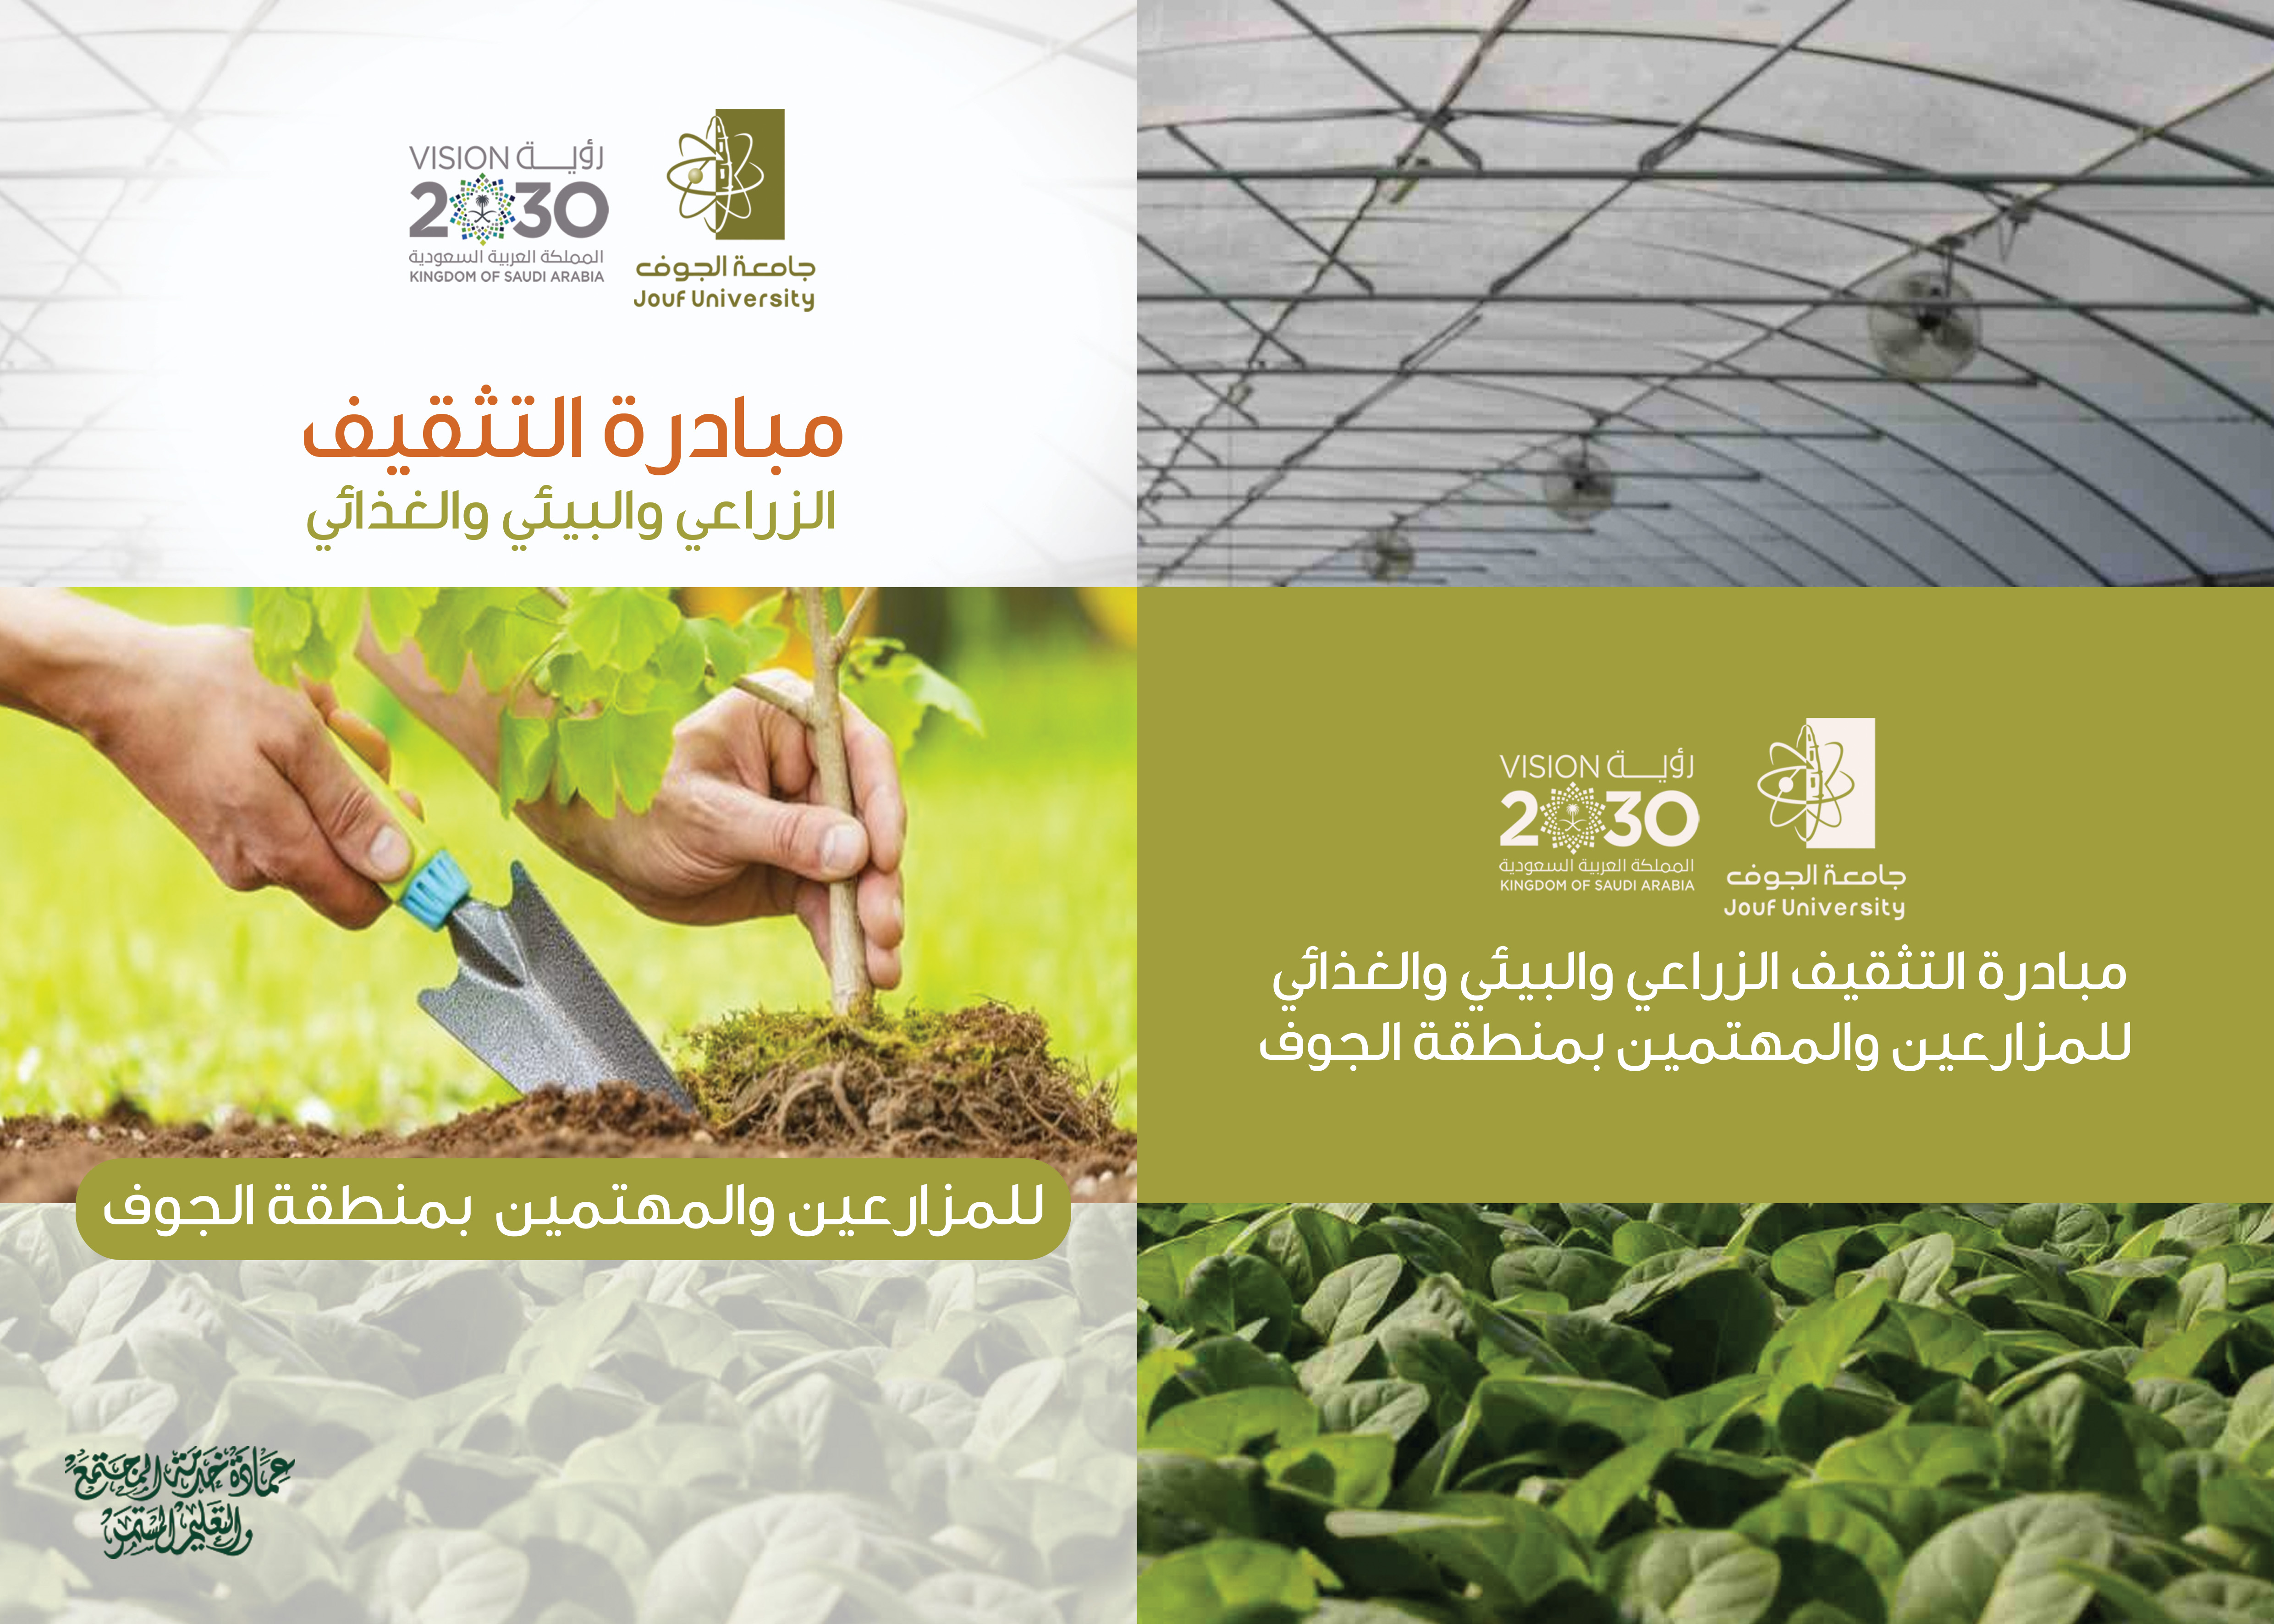 جامعة الجوف مبادرة التثقيف الزراعي والبيئي للمزارعين بمنطقة الجوف